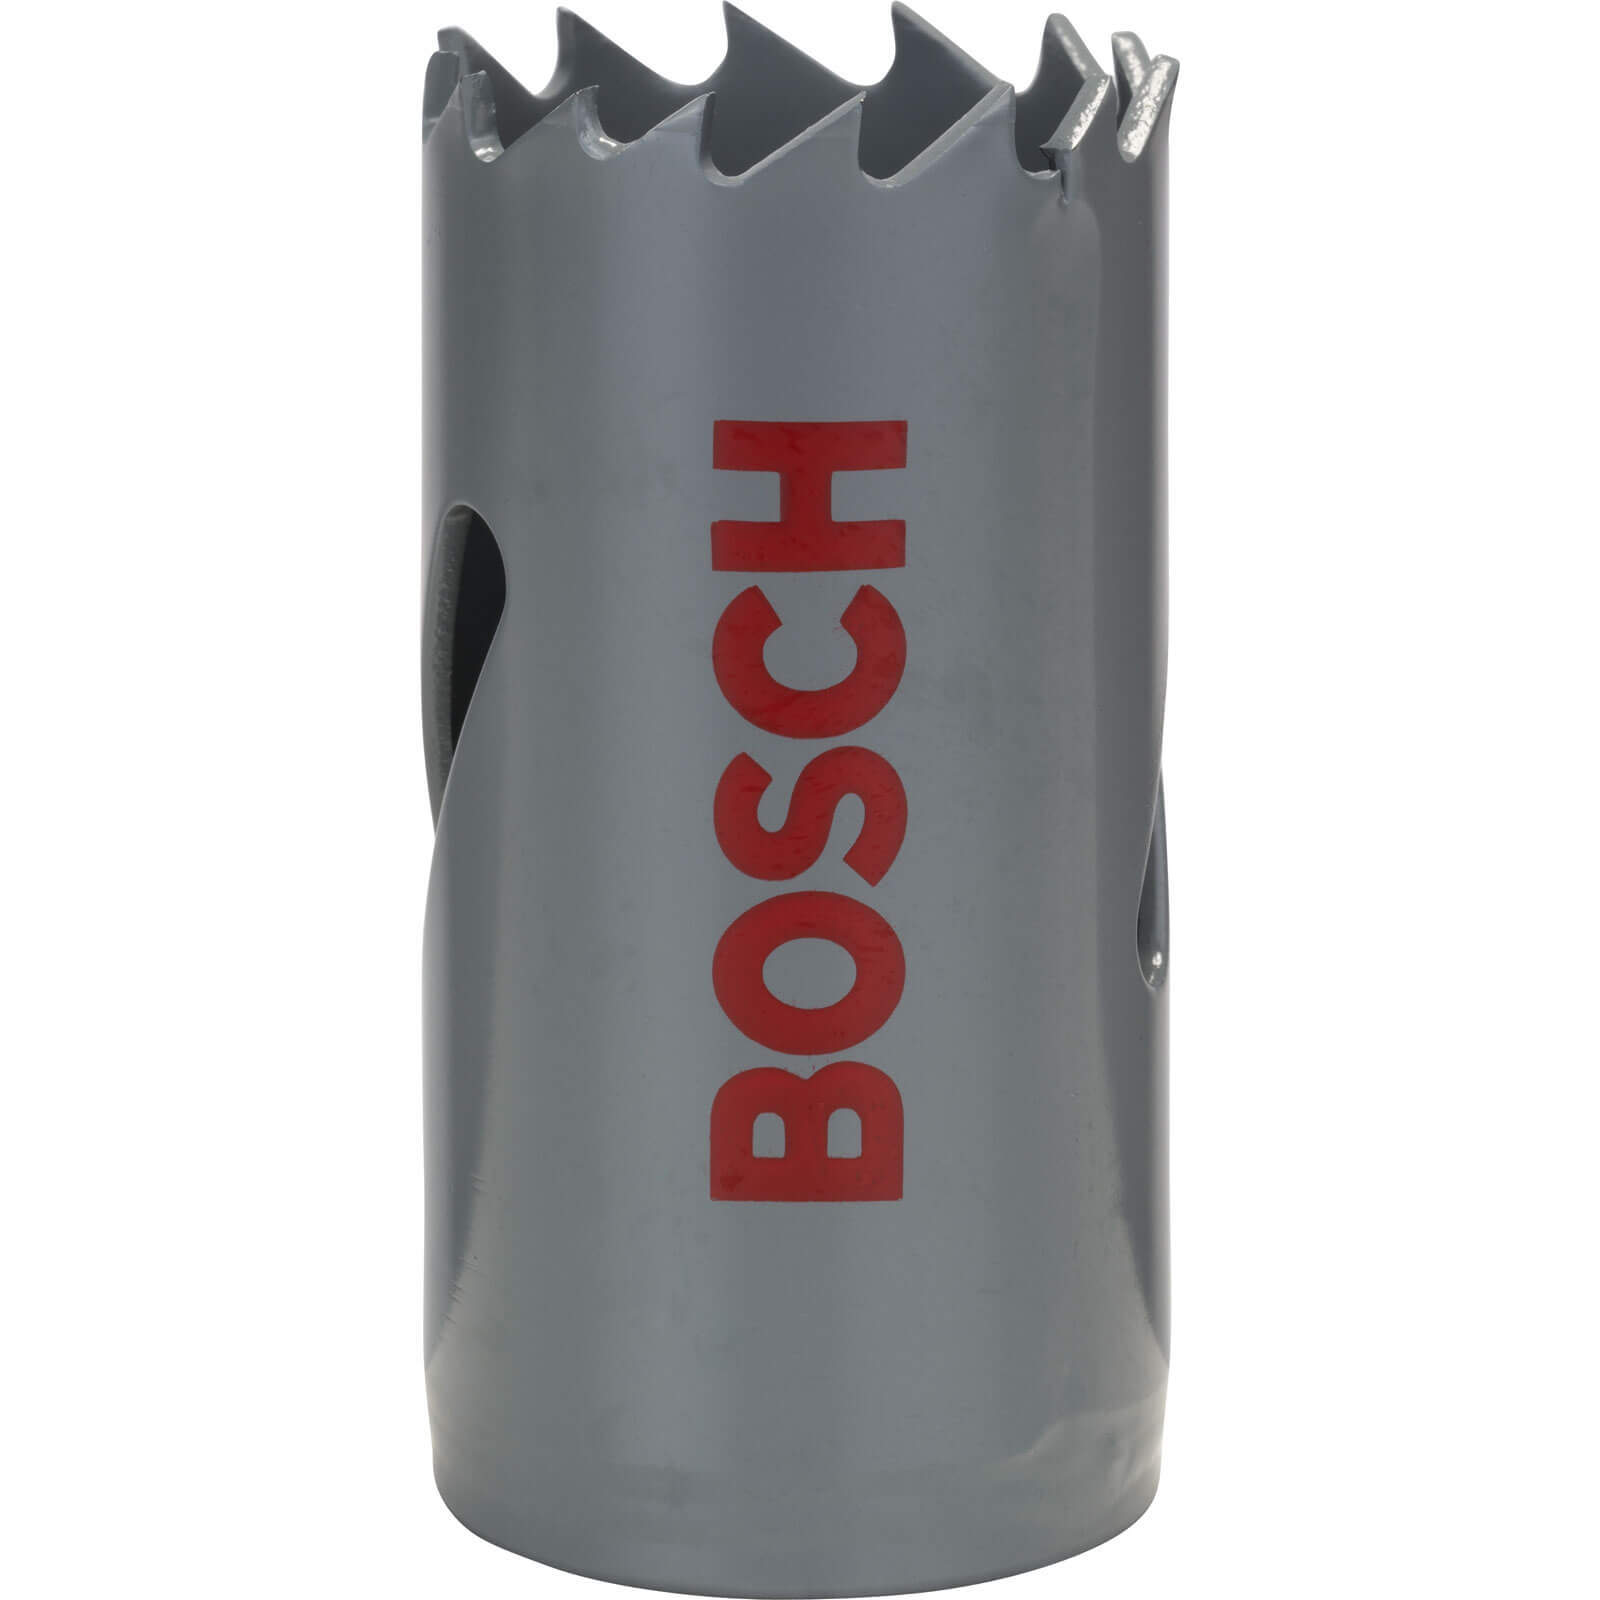 Photos - Diamond Core Bit / Milling Cutter Bosch HSS Bi Metal Hole Saw 27mm 